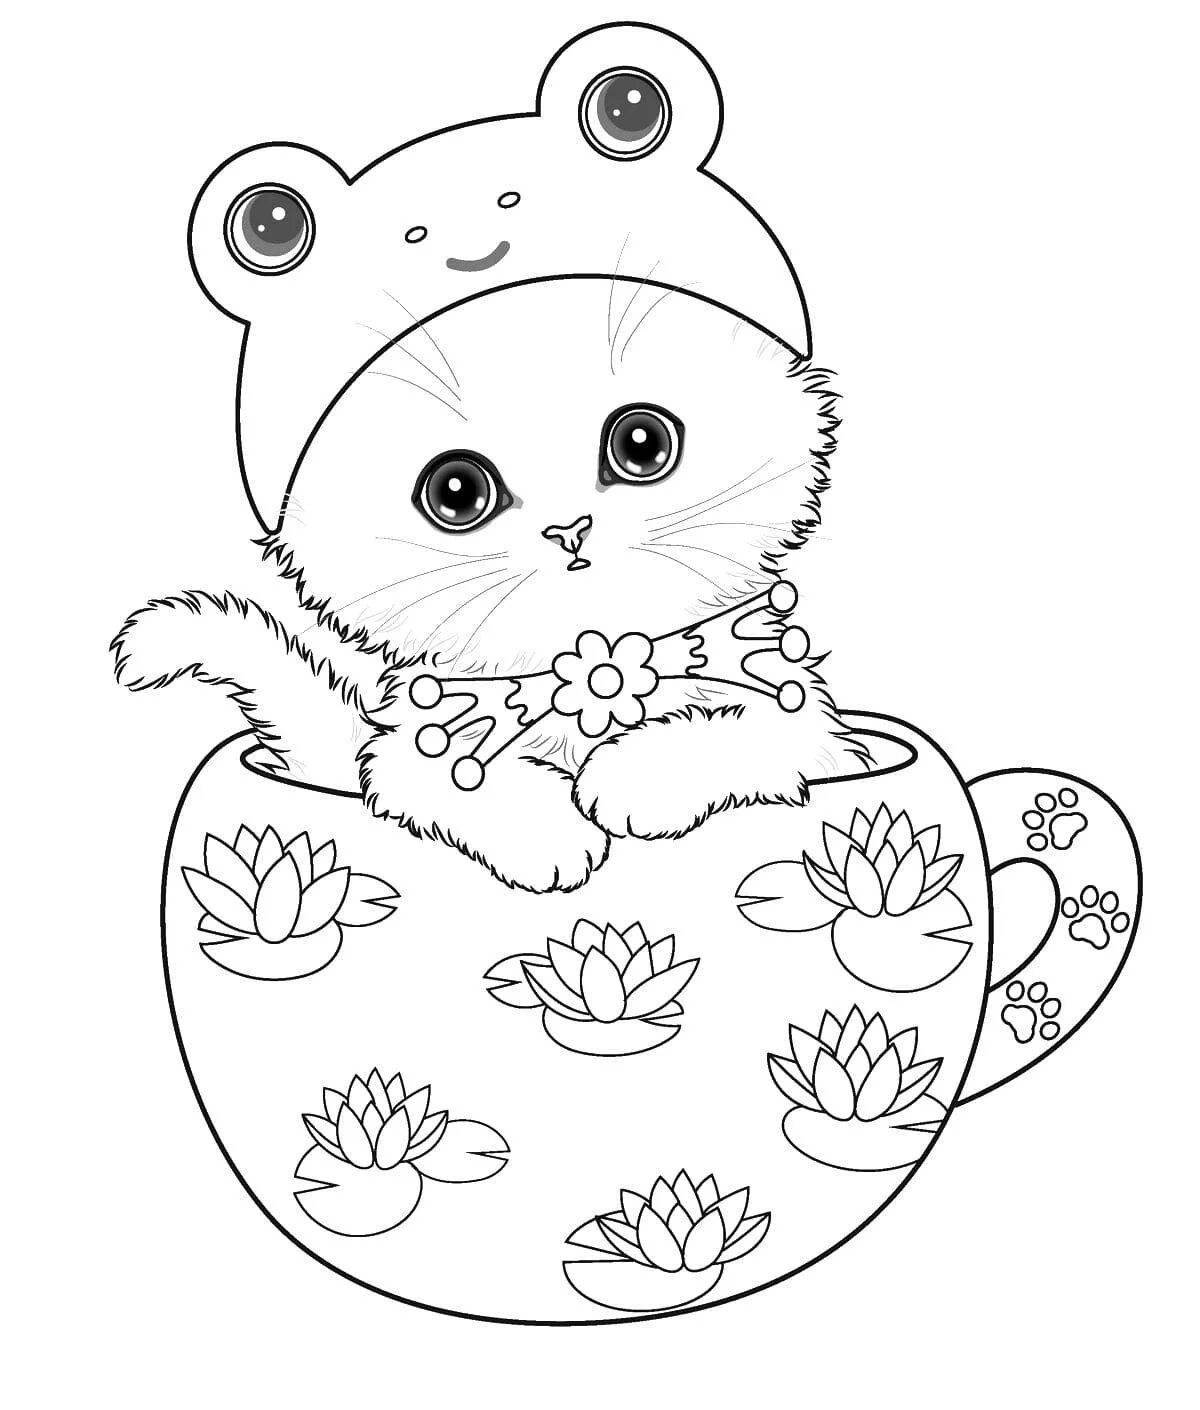 Раскраски коты для детей — Легко распечатать 15+ изображений — Kids Drawing Hub